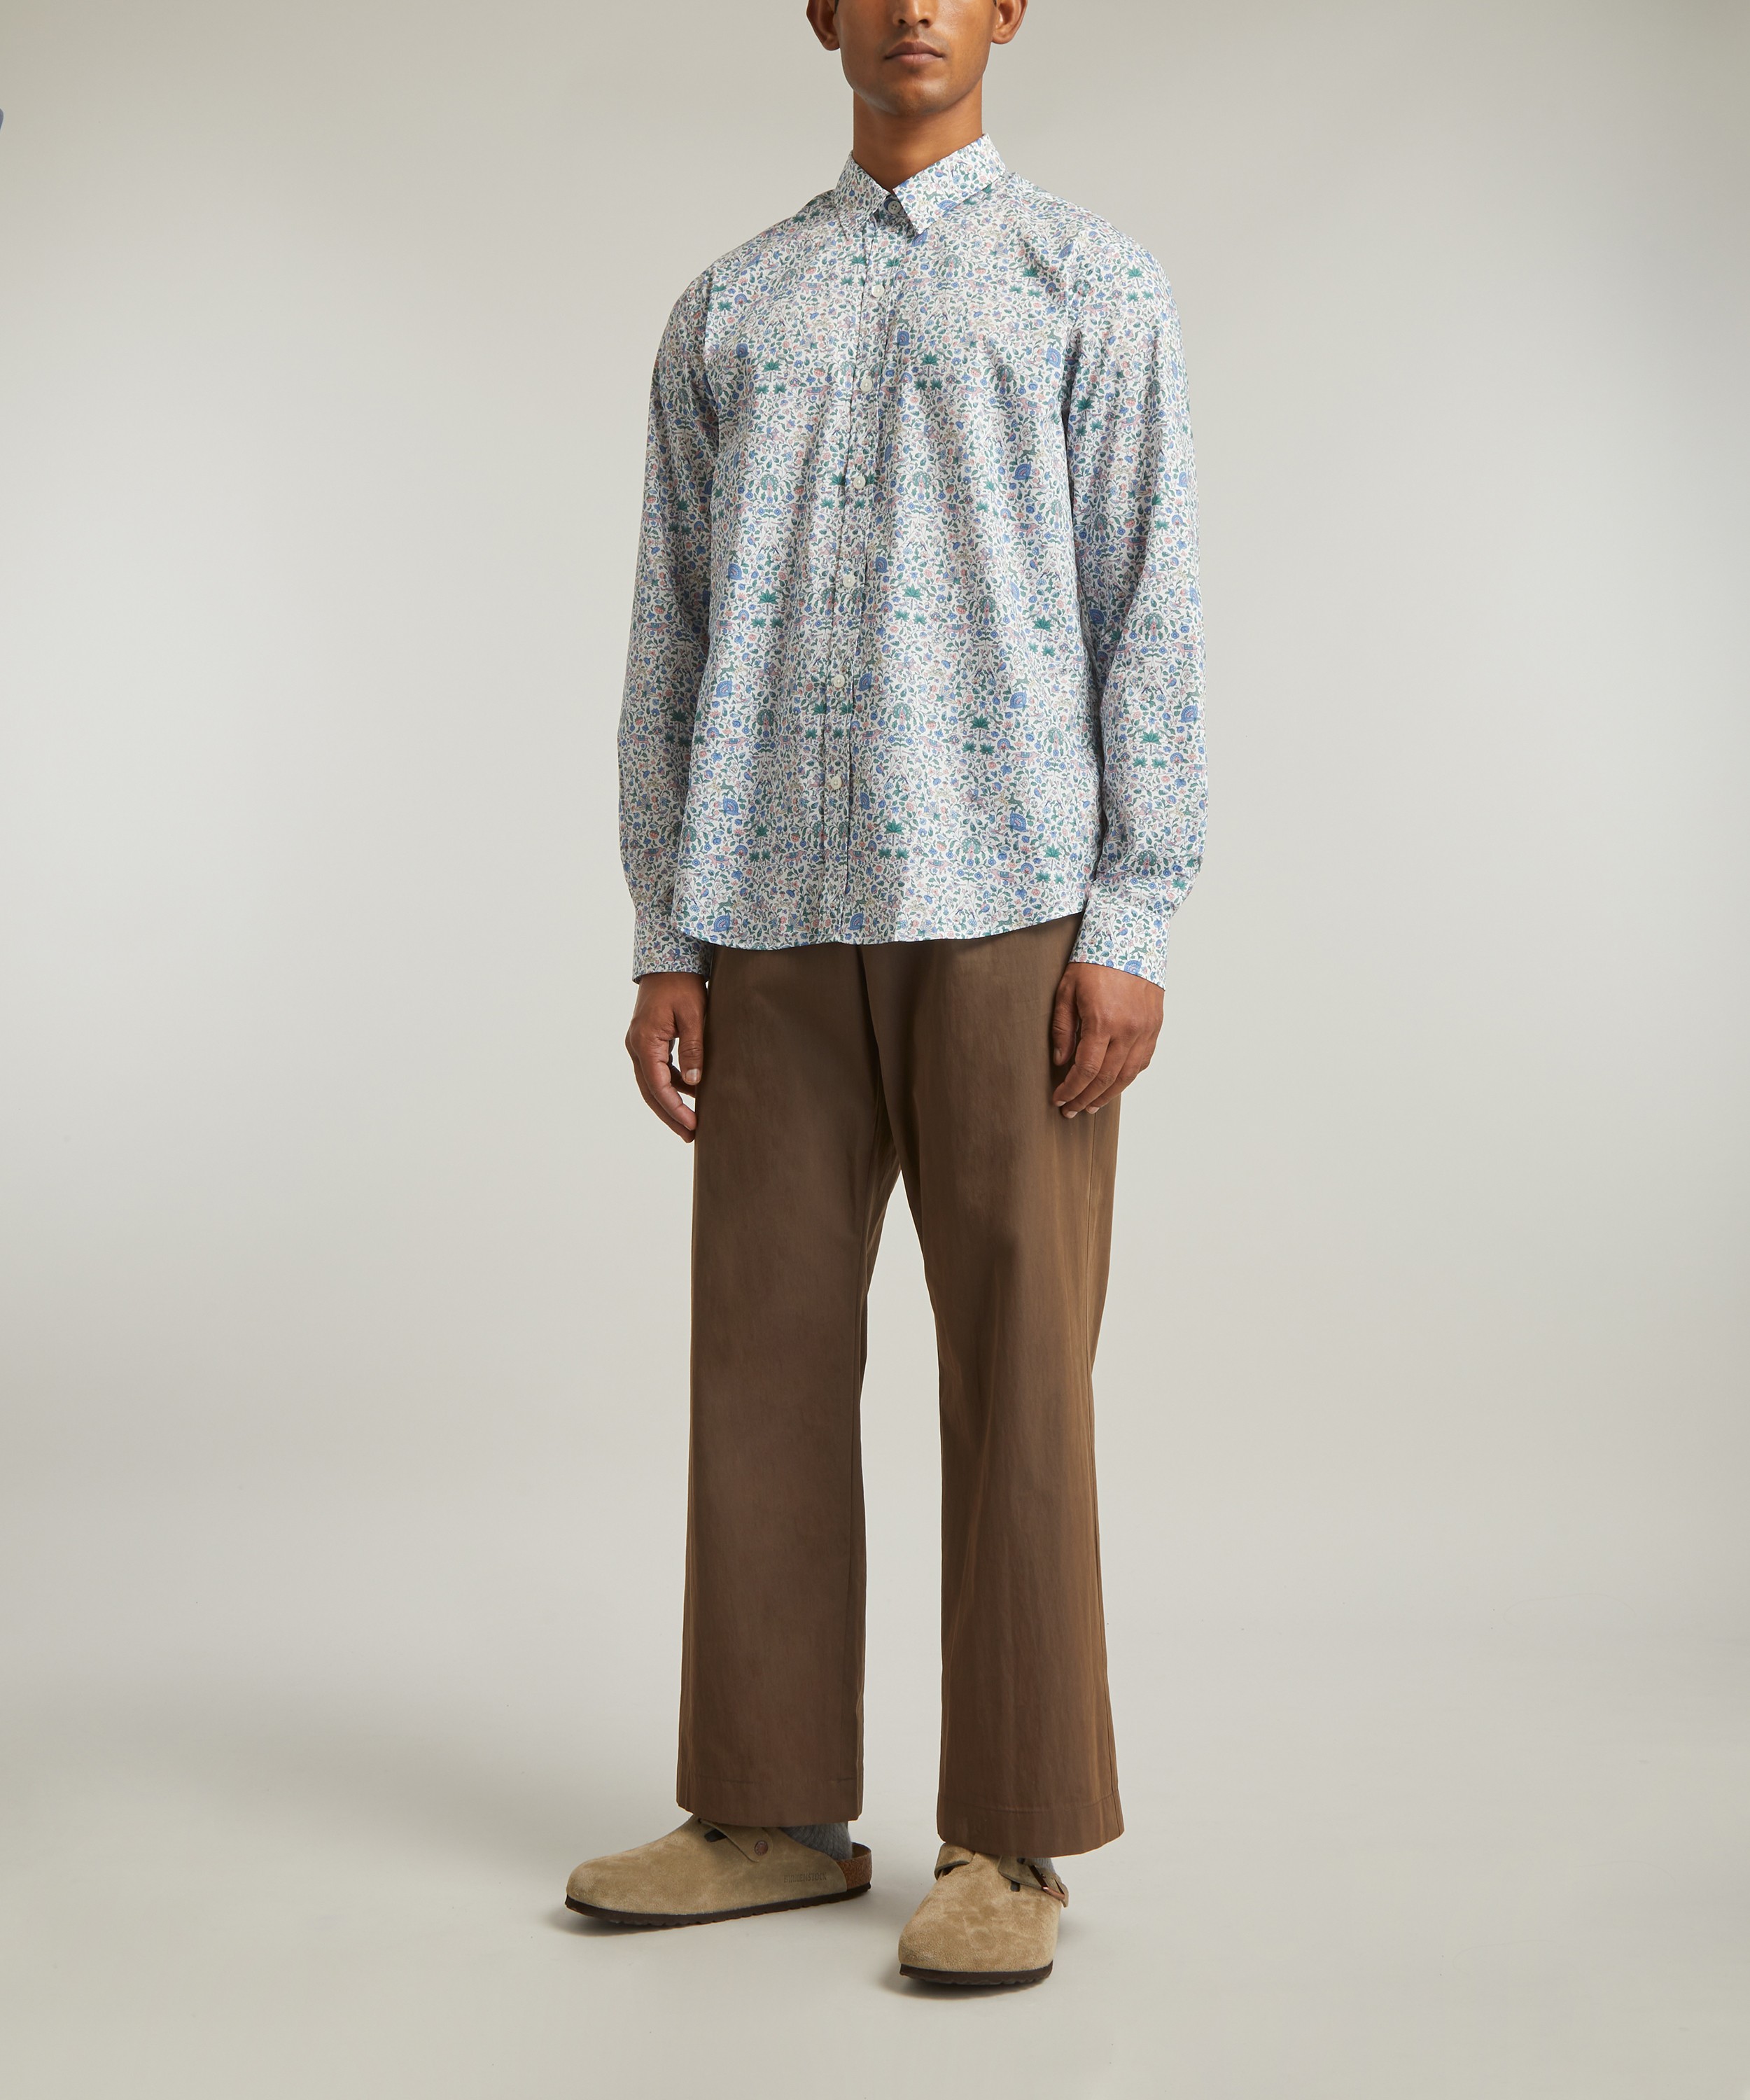 Liberty - Imran Tana Lawn™ Cotton Casual Classic Shirt image number 1